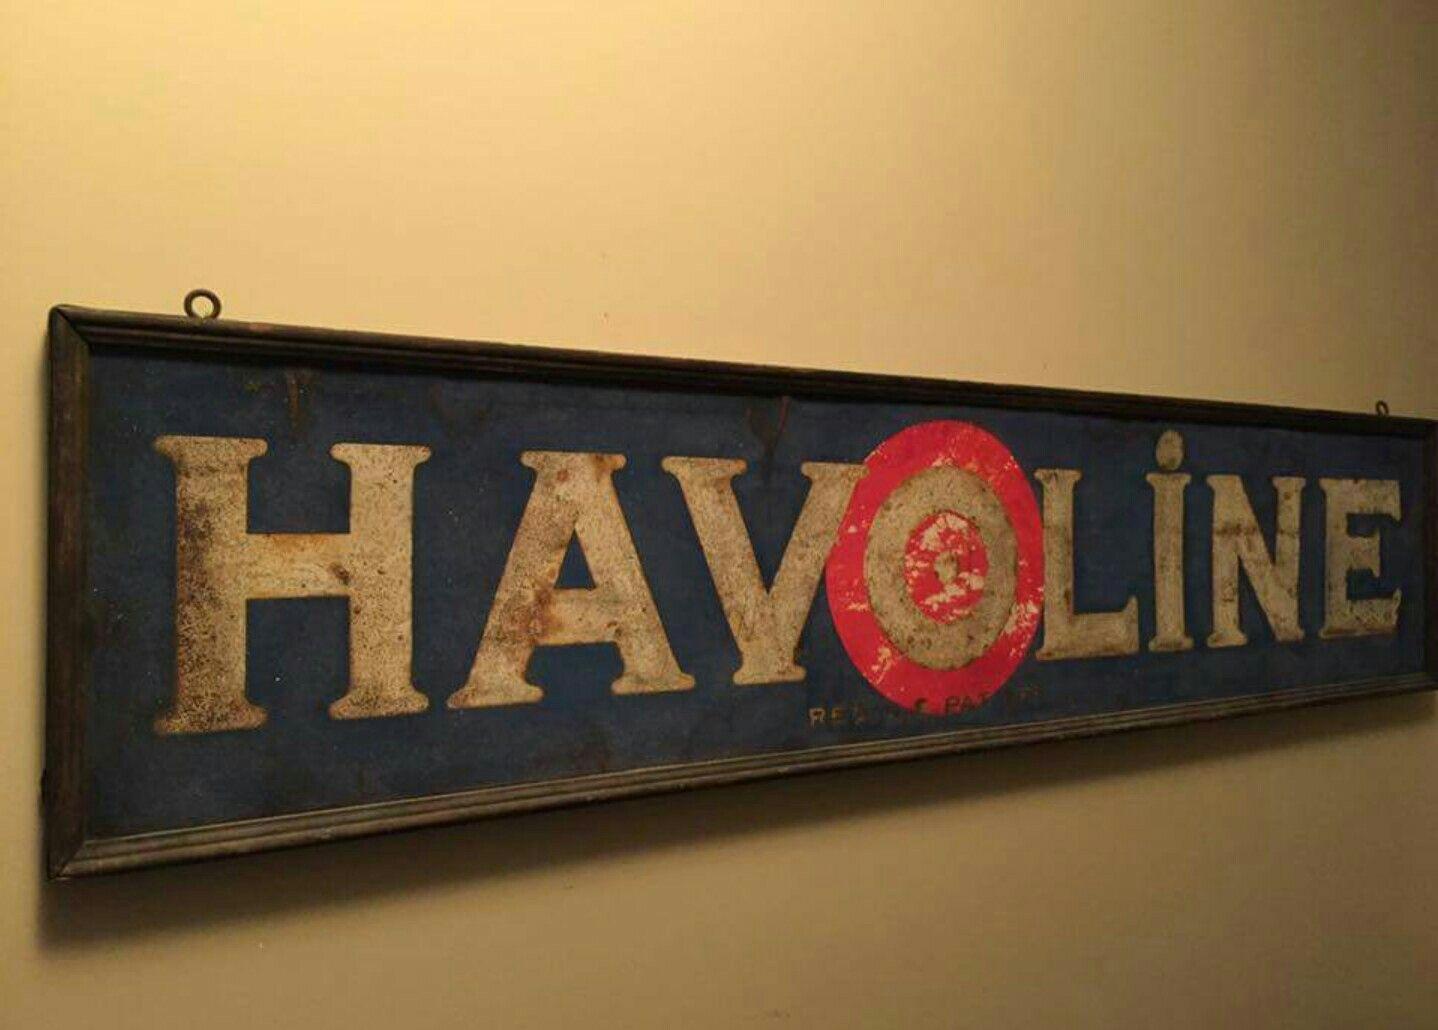 Old Havoline Logo - Early Original Havoline Motor Oil Sand Painted Sign. Porcelain